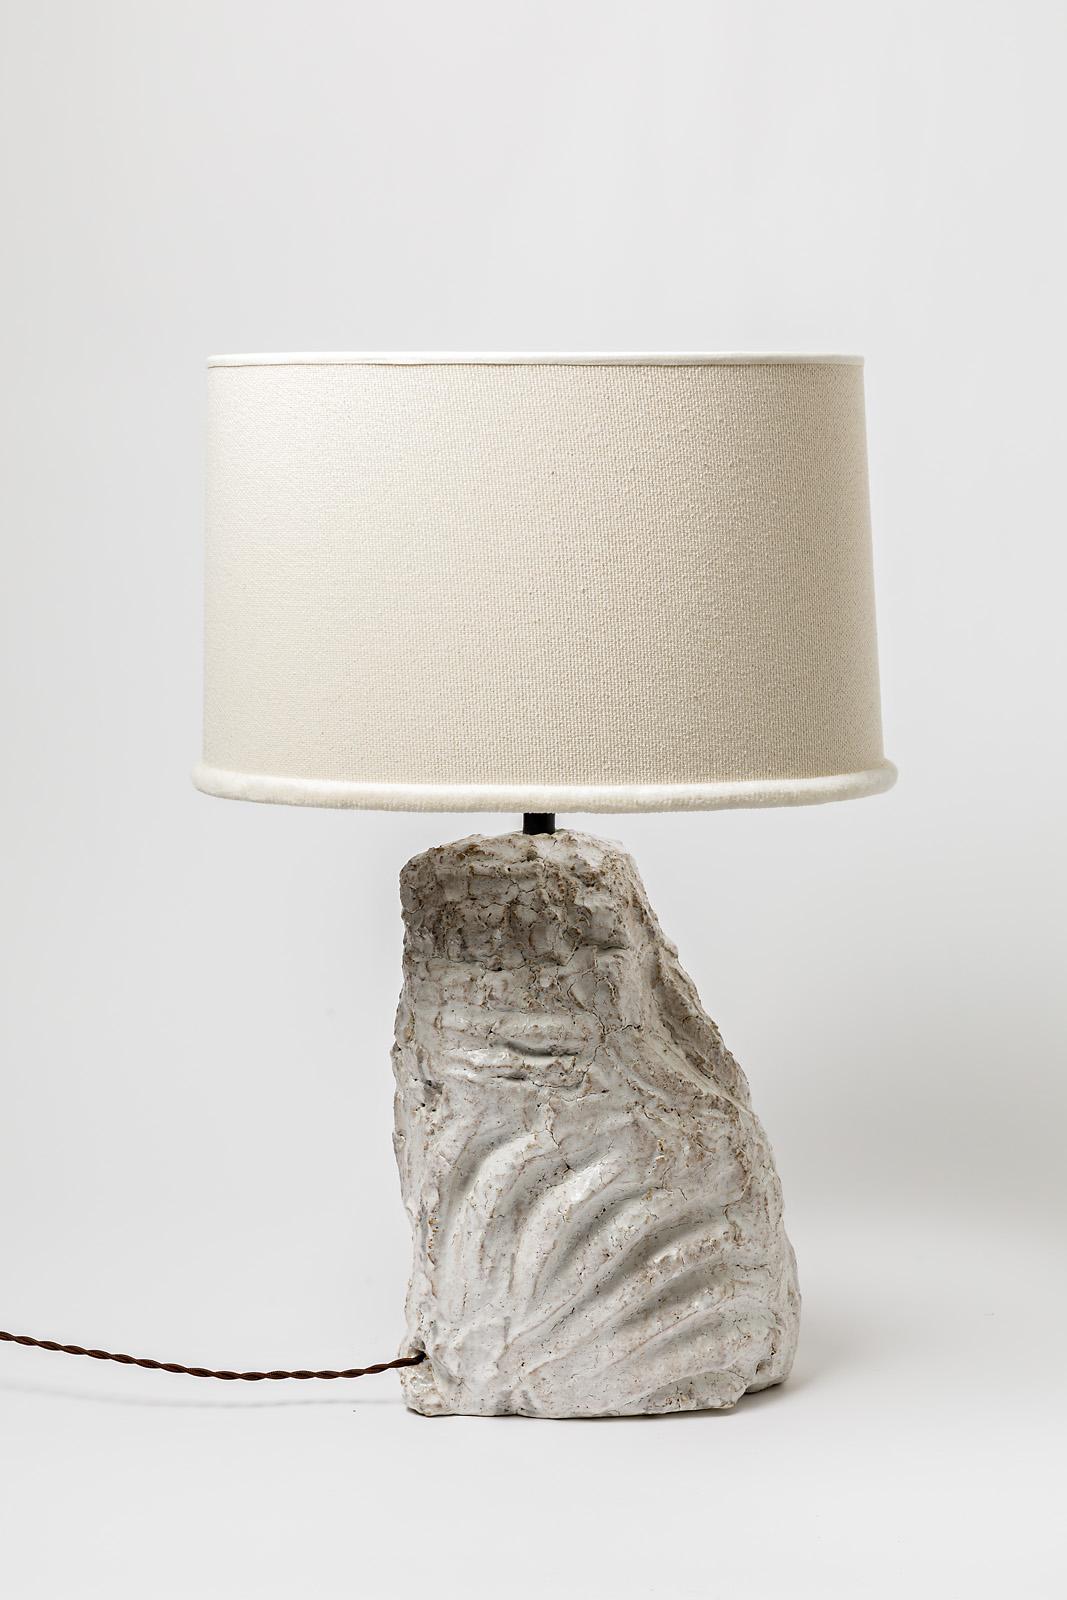 Eine Tischlampe aus Keramik mit weißer Glasur.
Verkauft mit einem neuen Lampenschirm und einem neuen europäischen elektrischen System.
Unter dem Sockel signiert.
Perfekter Originalzustand.
Ca. 2022.
Es ist möglich, ein Paar und wenige Stücke zu